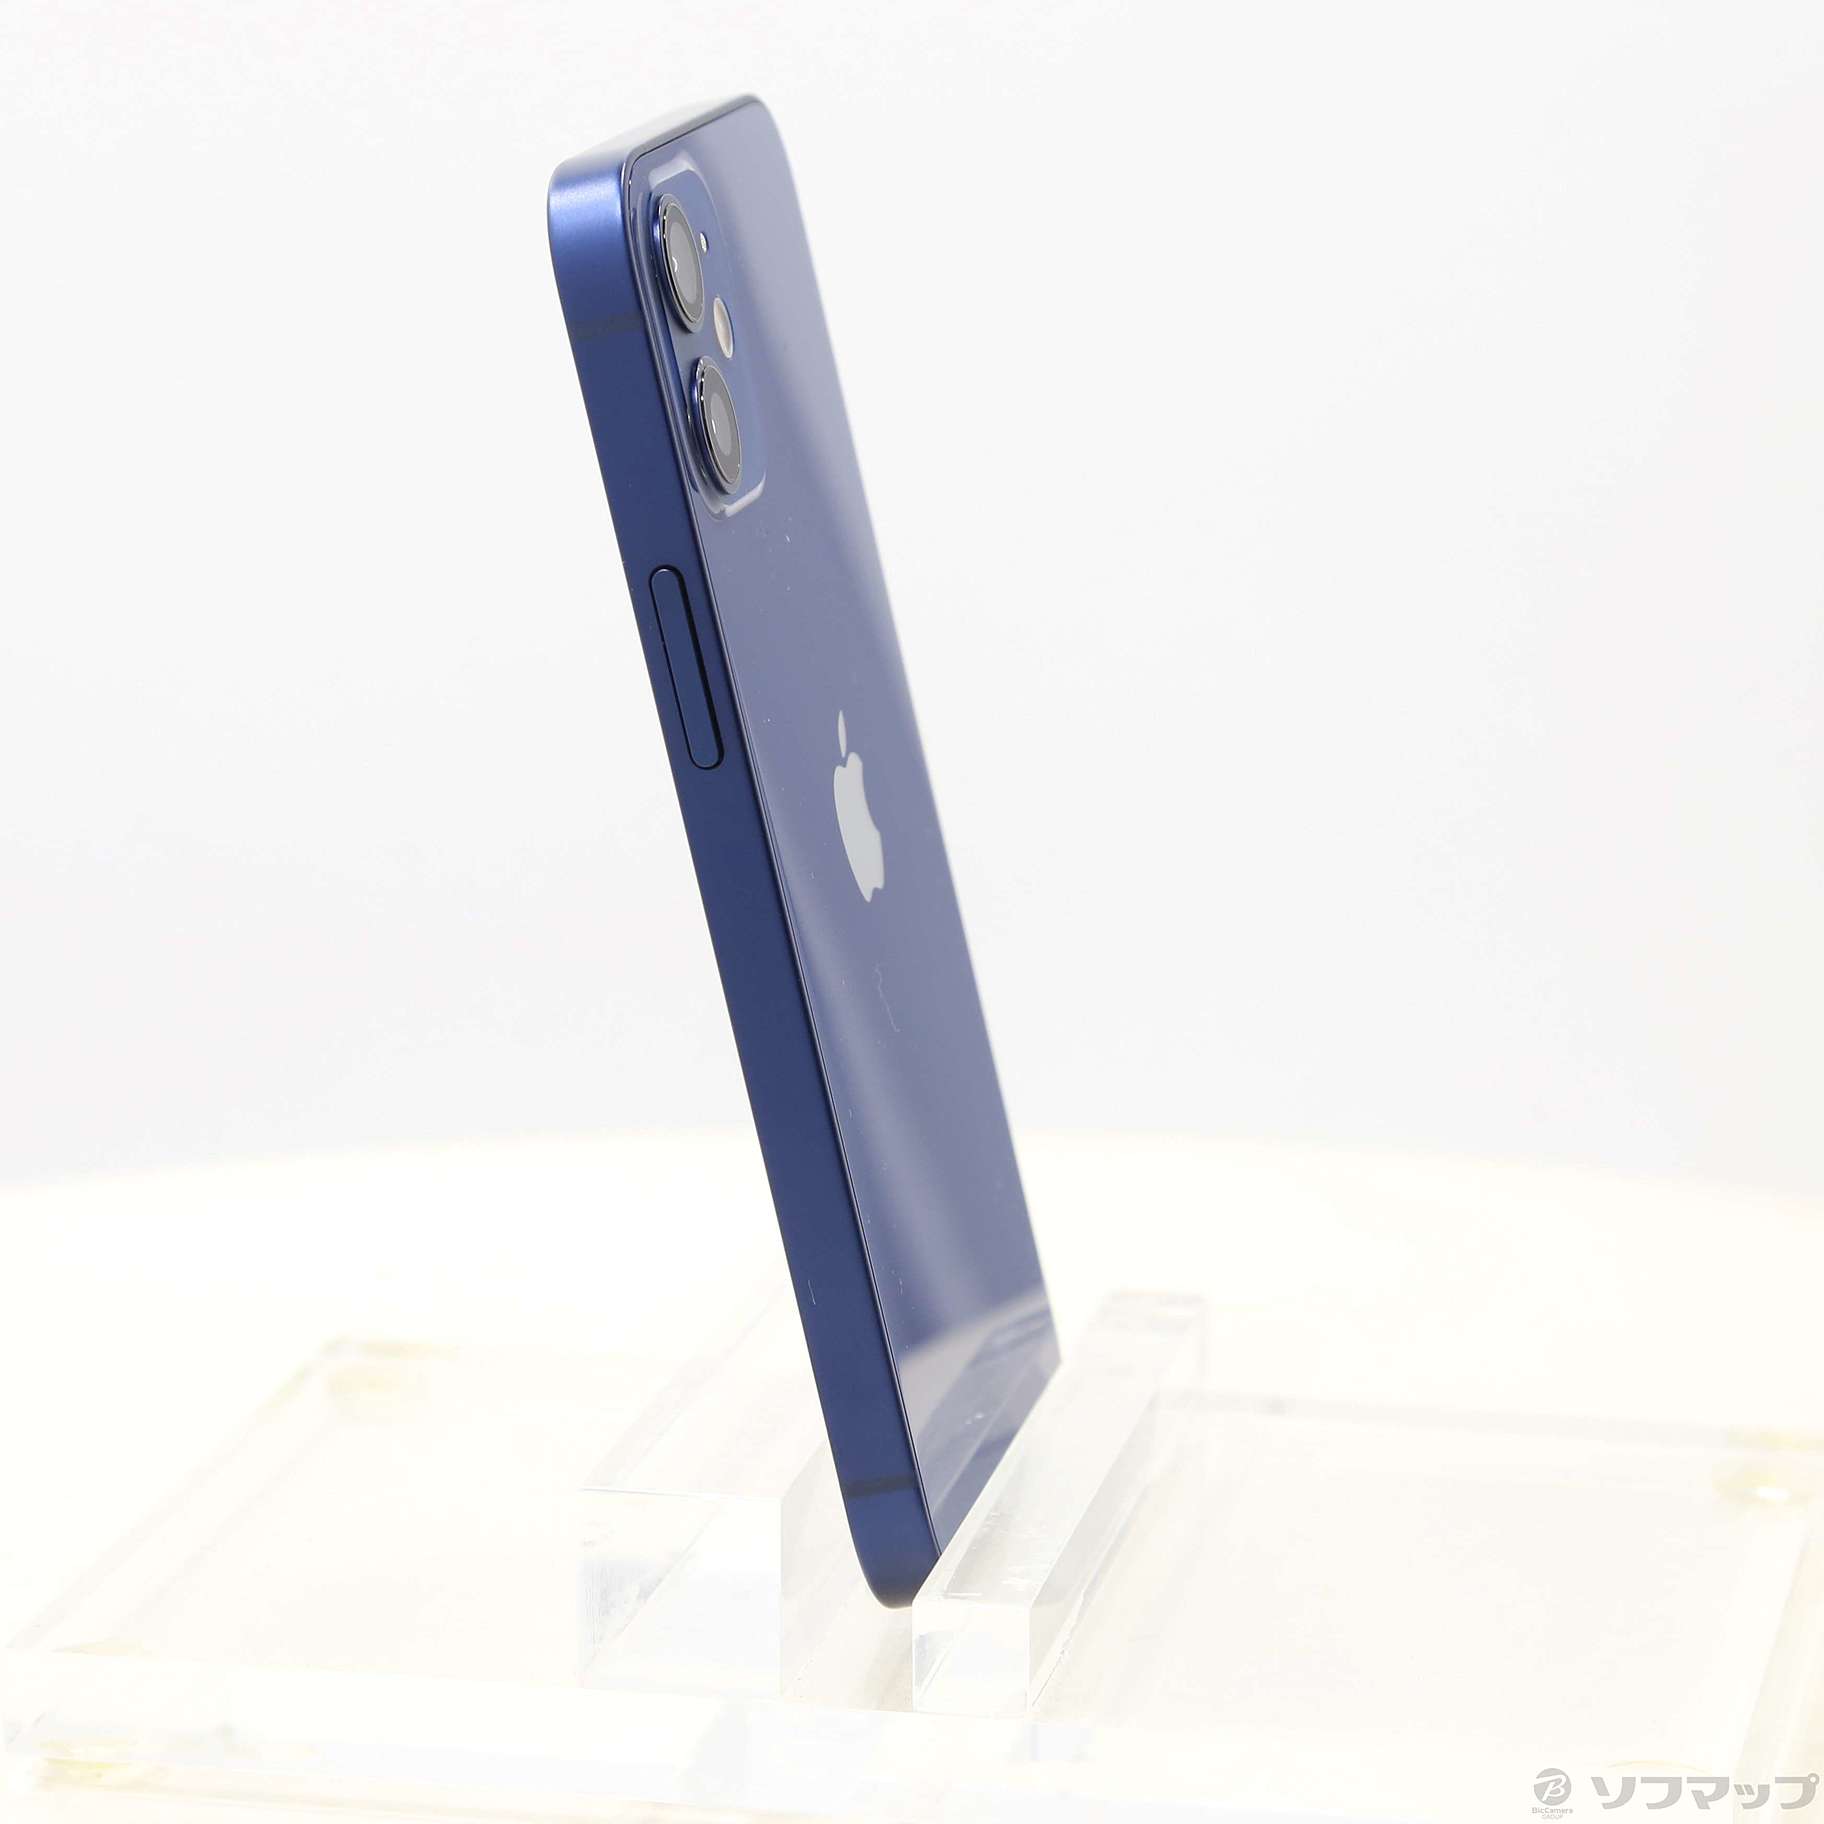 Apple iPhone 12 mini 64GB MGAP3J/A ブルー